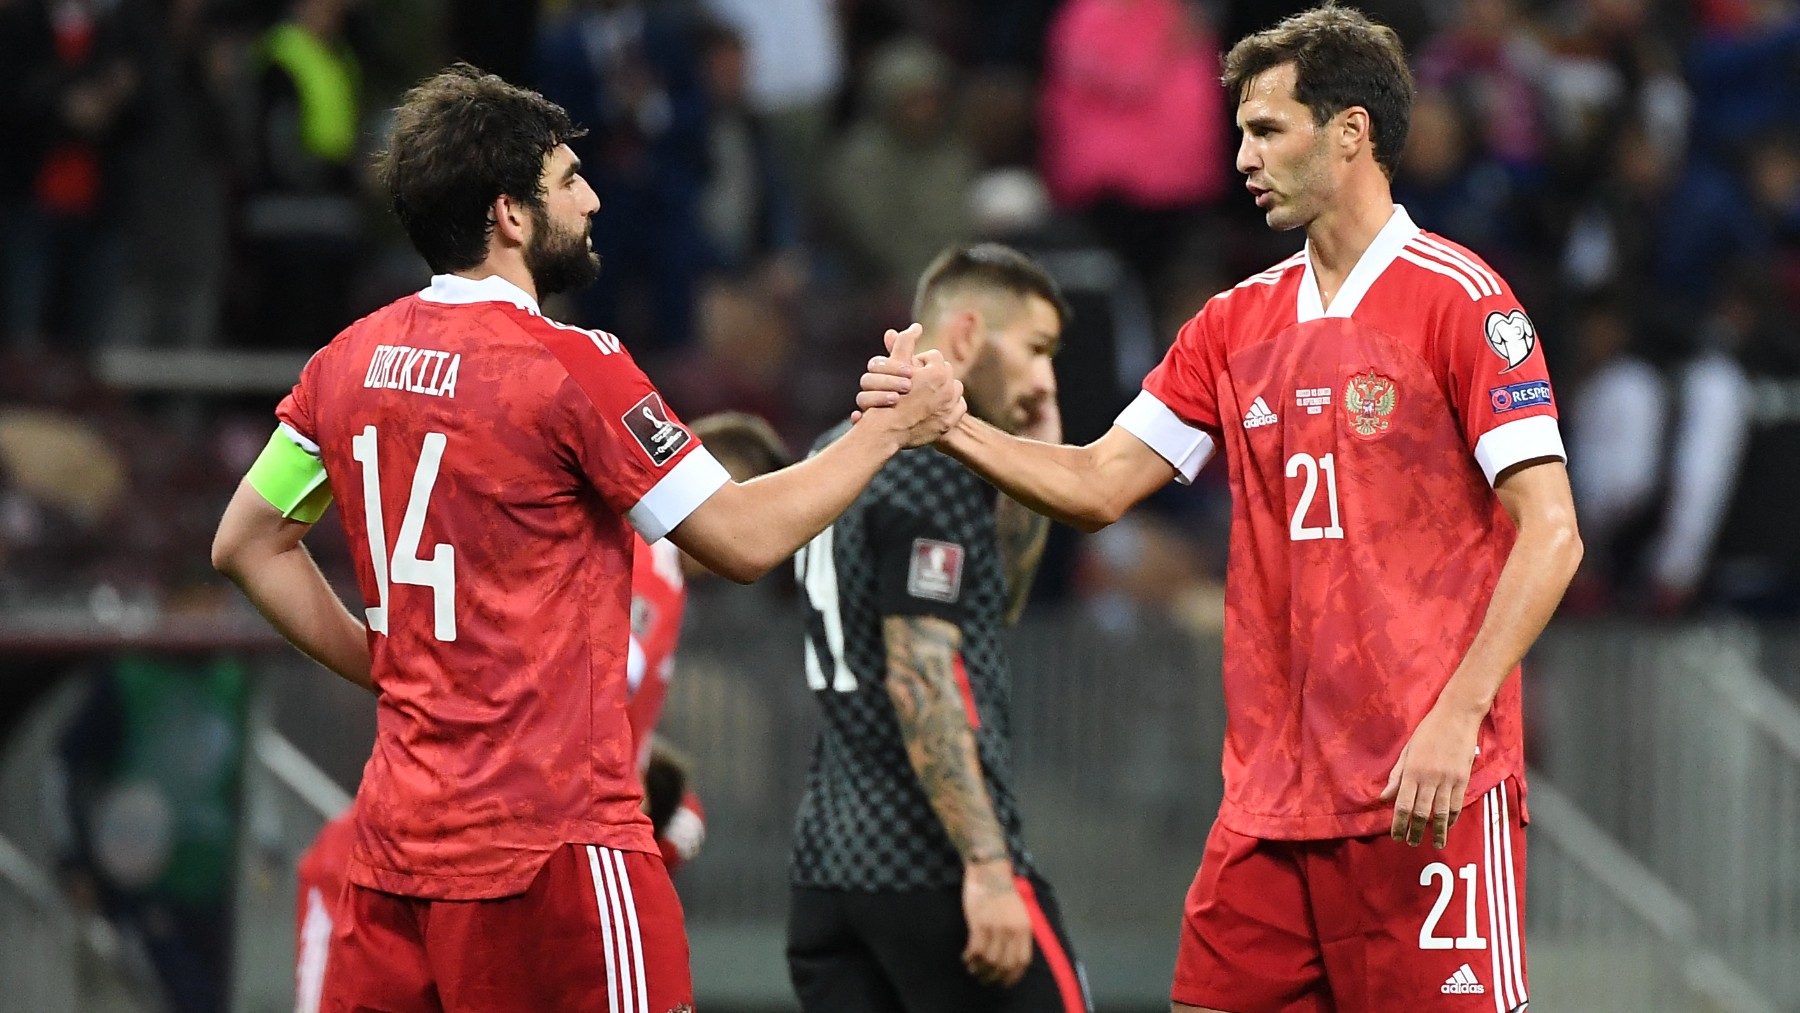 Dzhikiya y Erokhin se saludan durante un partido de la selección rusa con la camiseta de Adidas. (AFP)